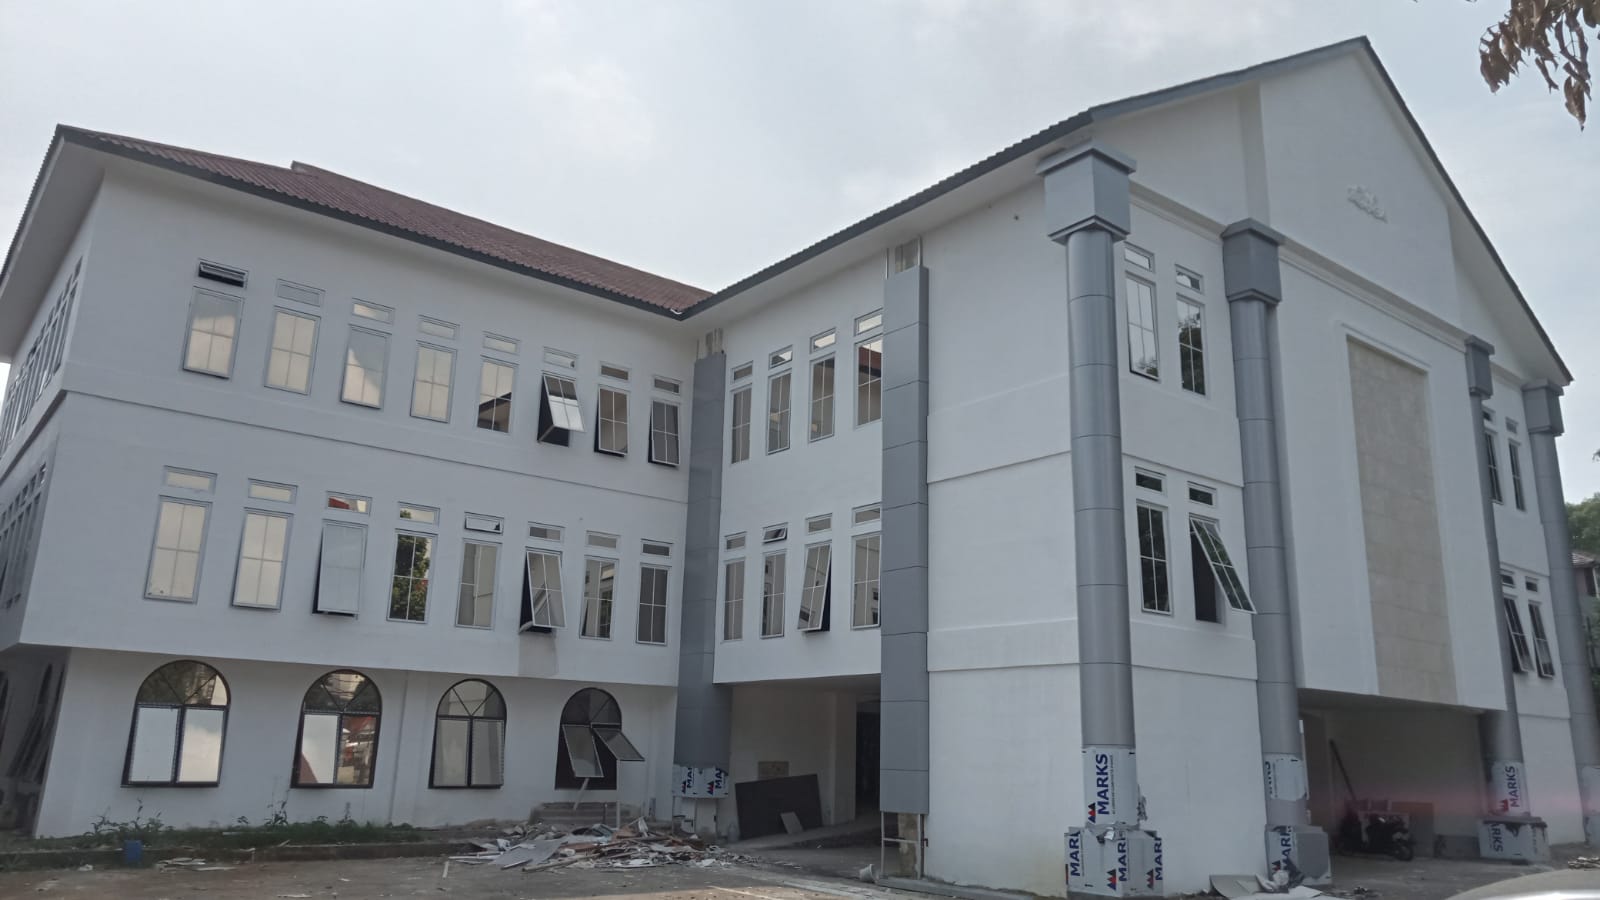 Kelebihan Bayar ke Kontraktor Berujung Temuan BPK, Revitalisasi Perpustakaan Daerah Kota Bogor Ruwet